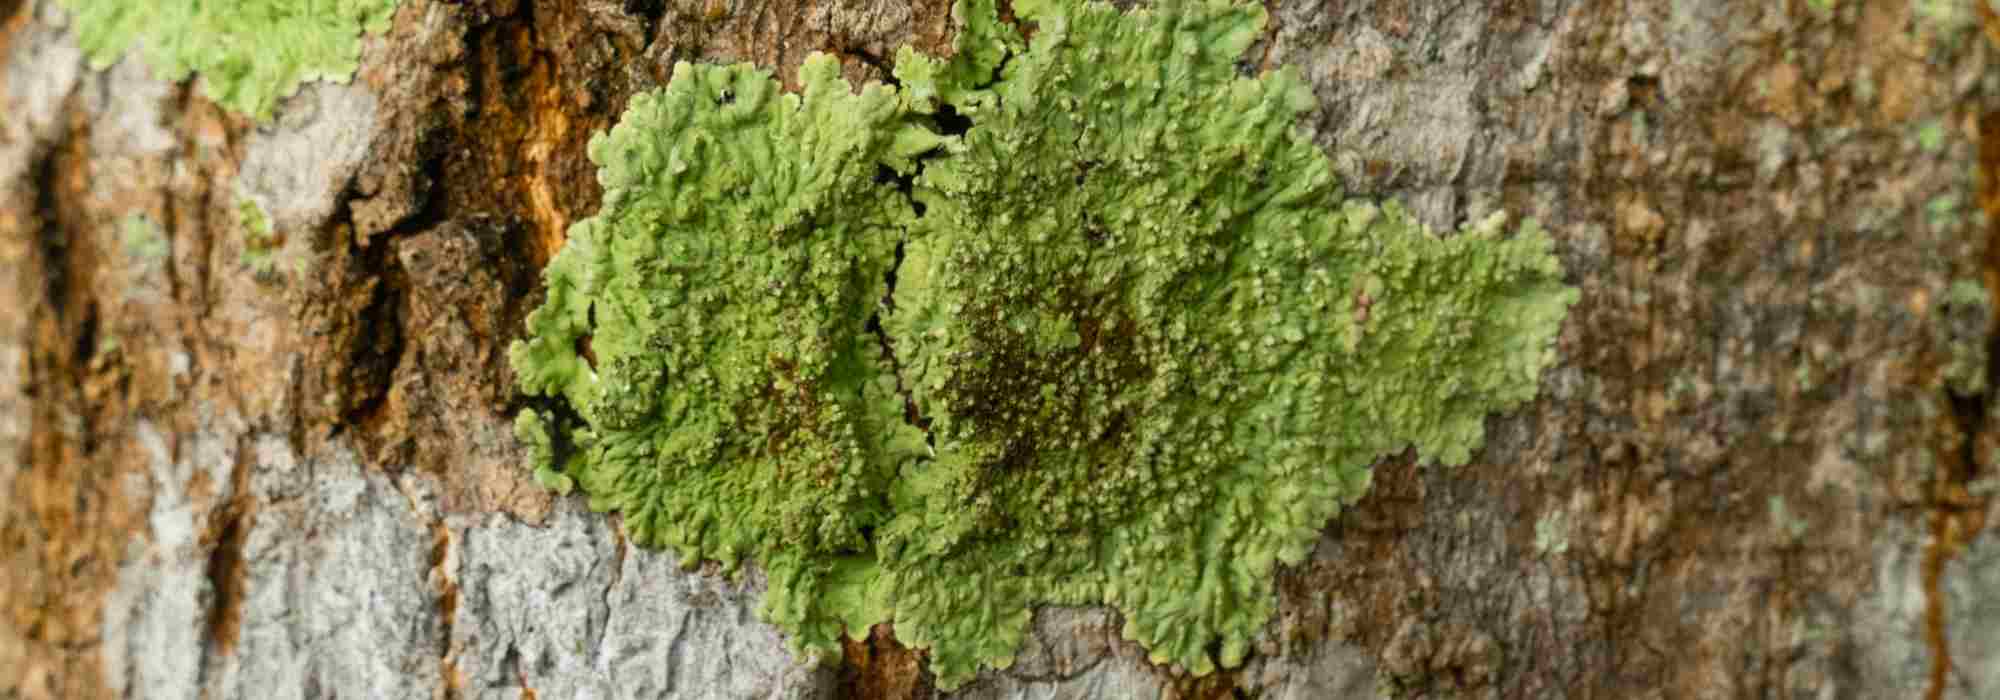 Du lichen sur les arbres : faut-il s'en inquiéter ?